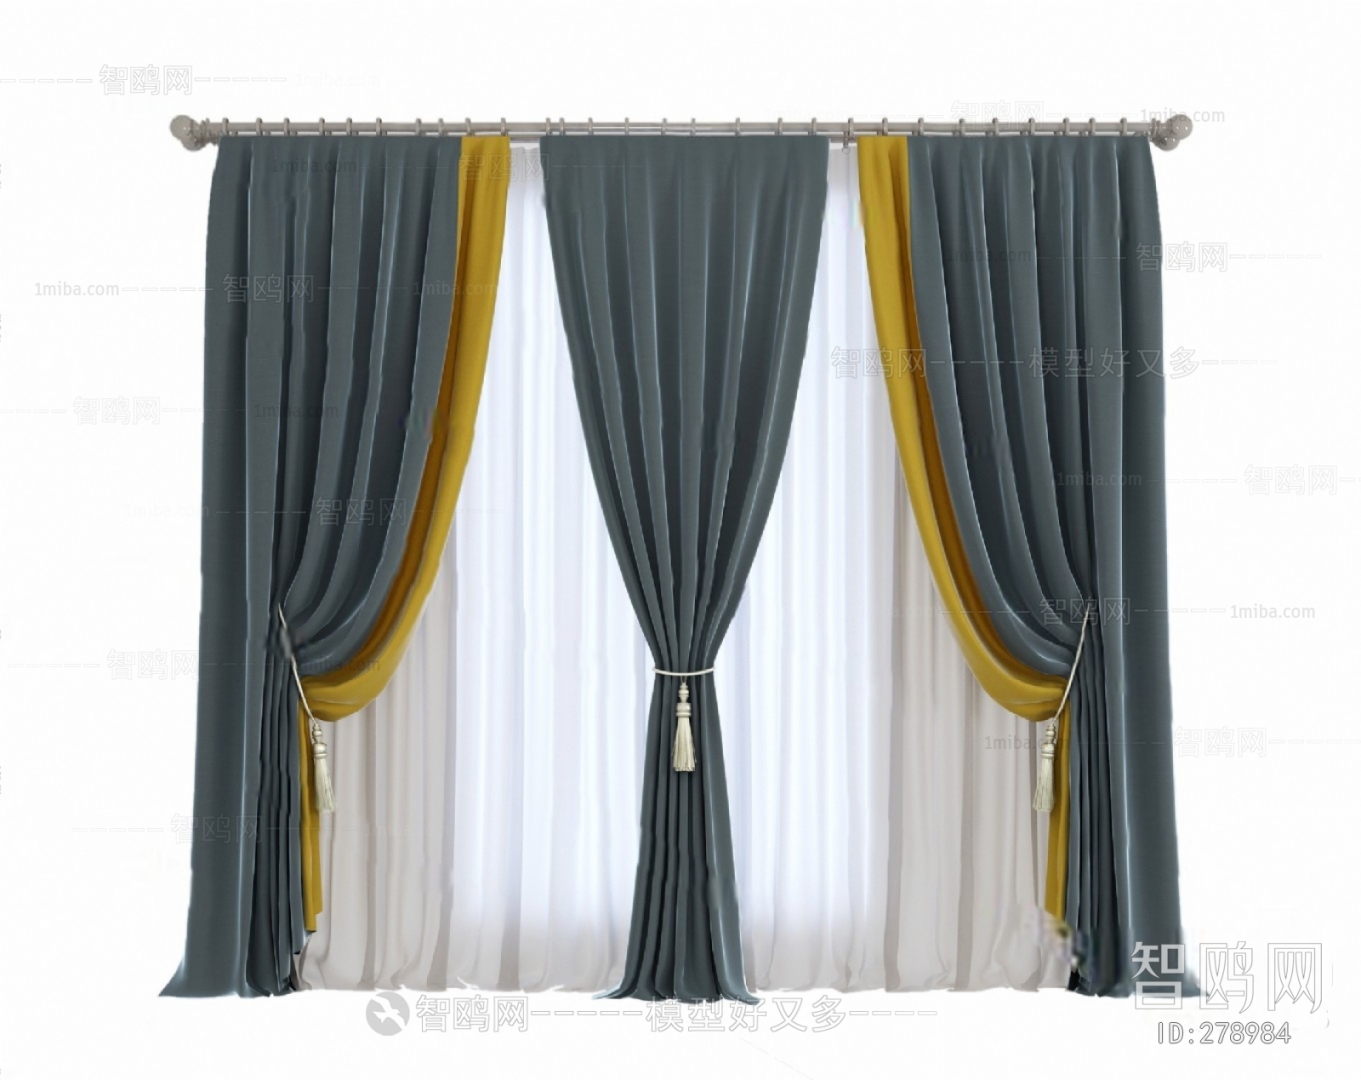  The Curtain